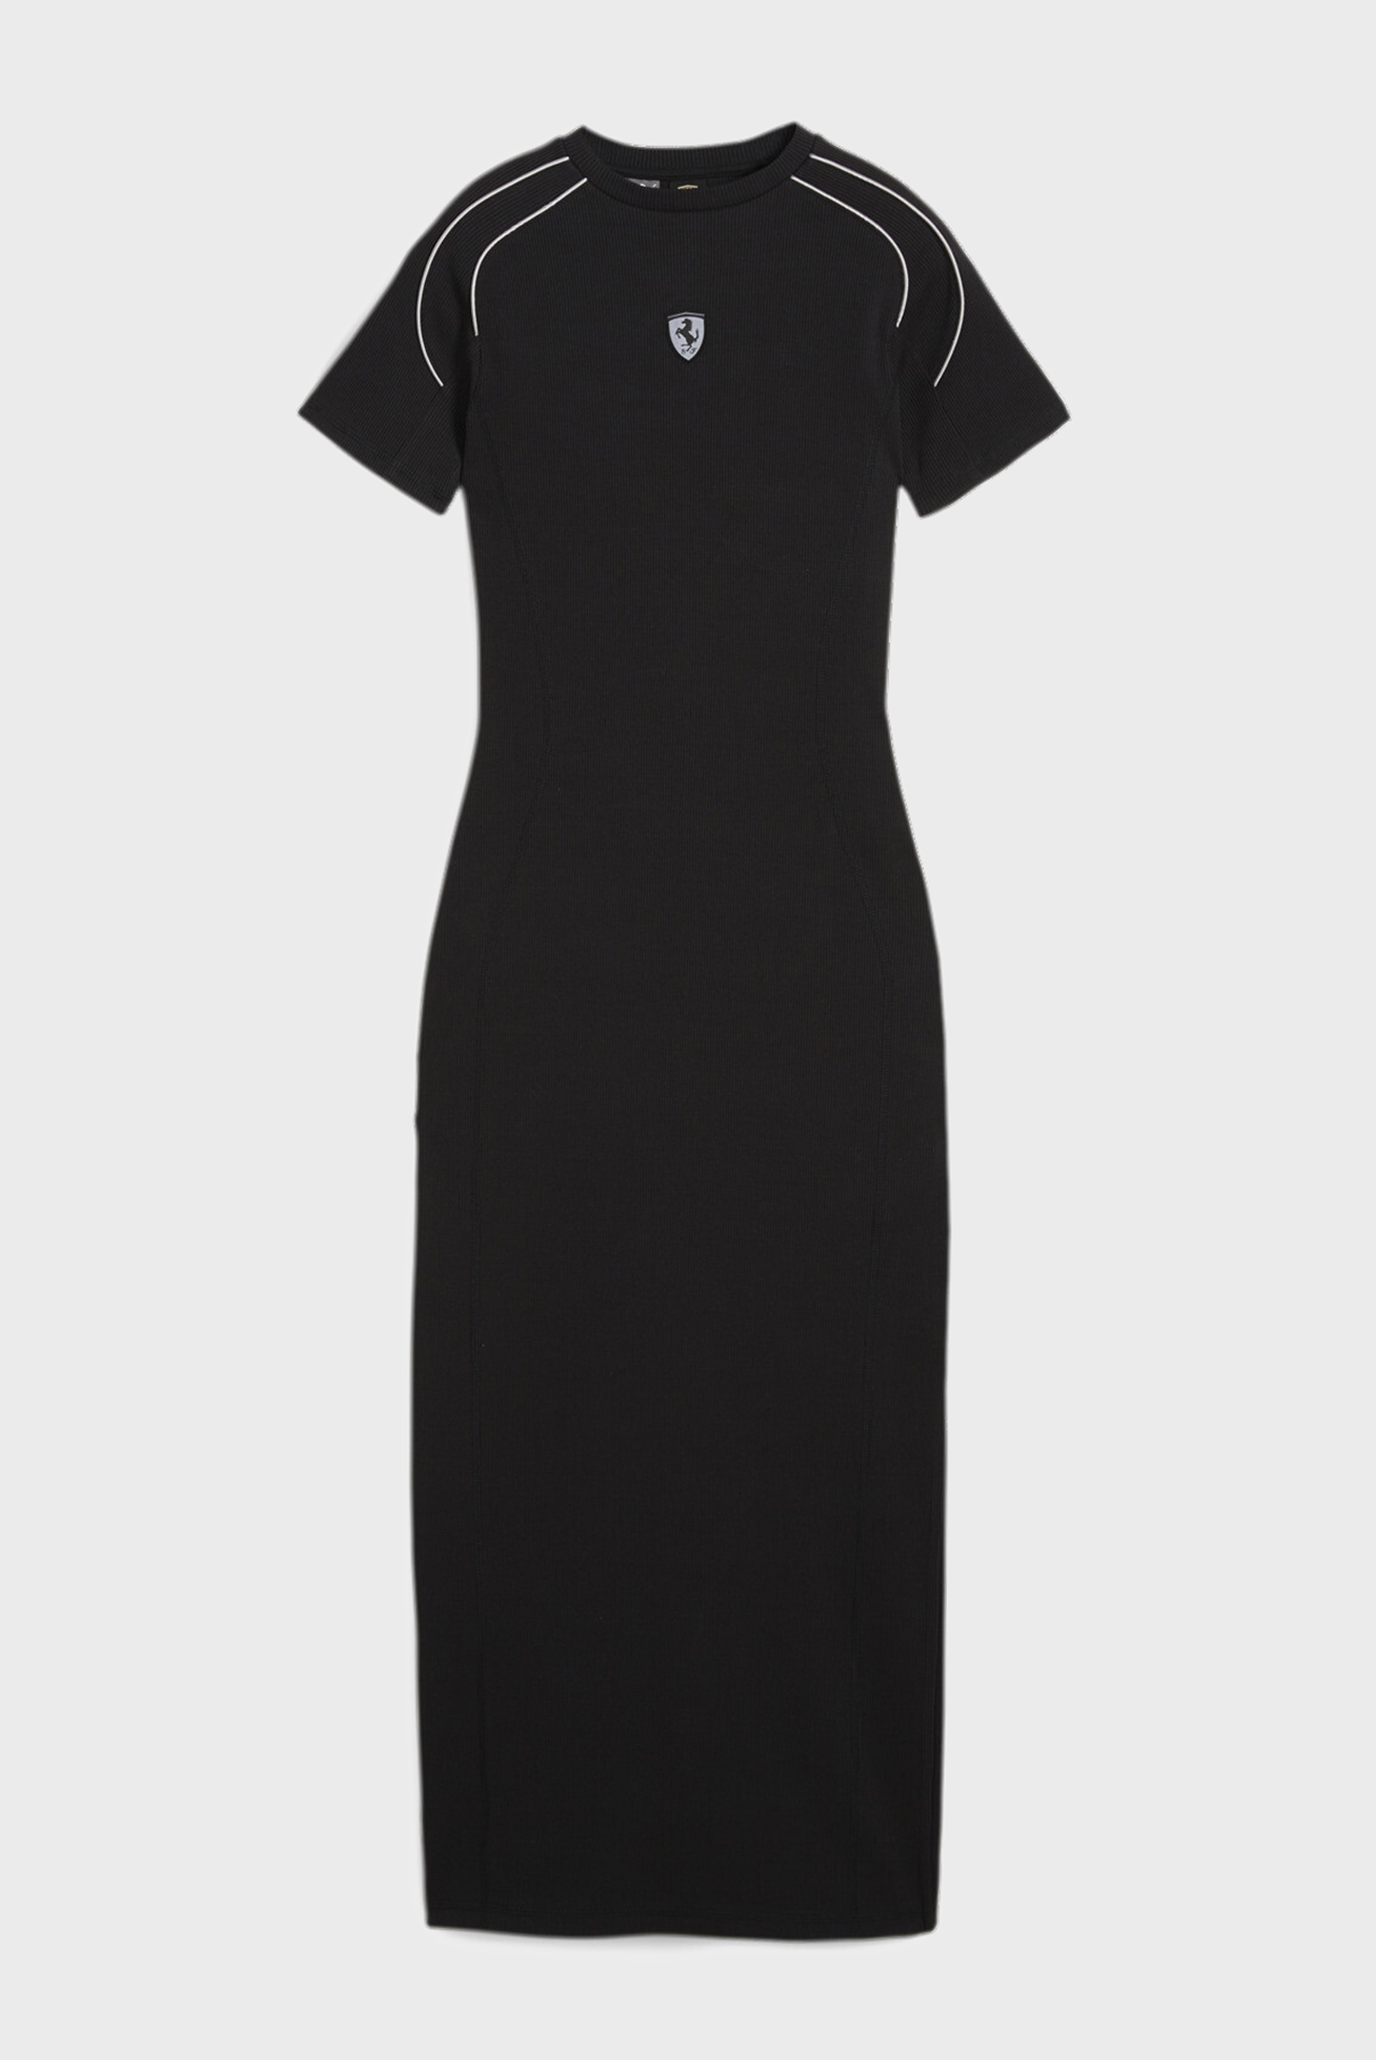 Женское черное платье Scuderia Ferrari Style Women's Dress 1